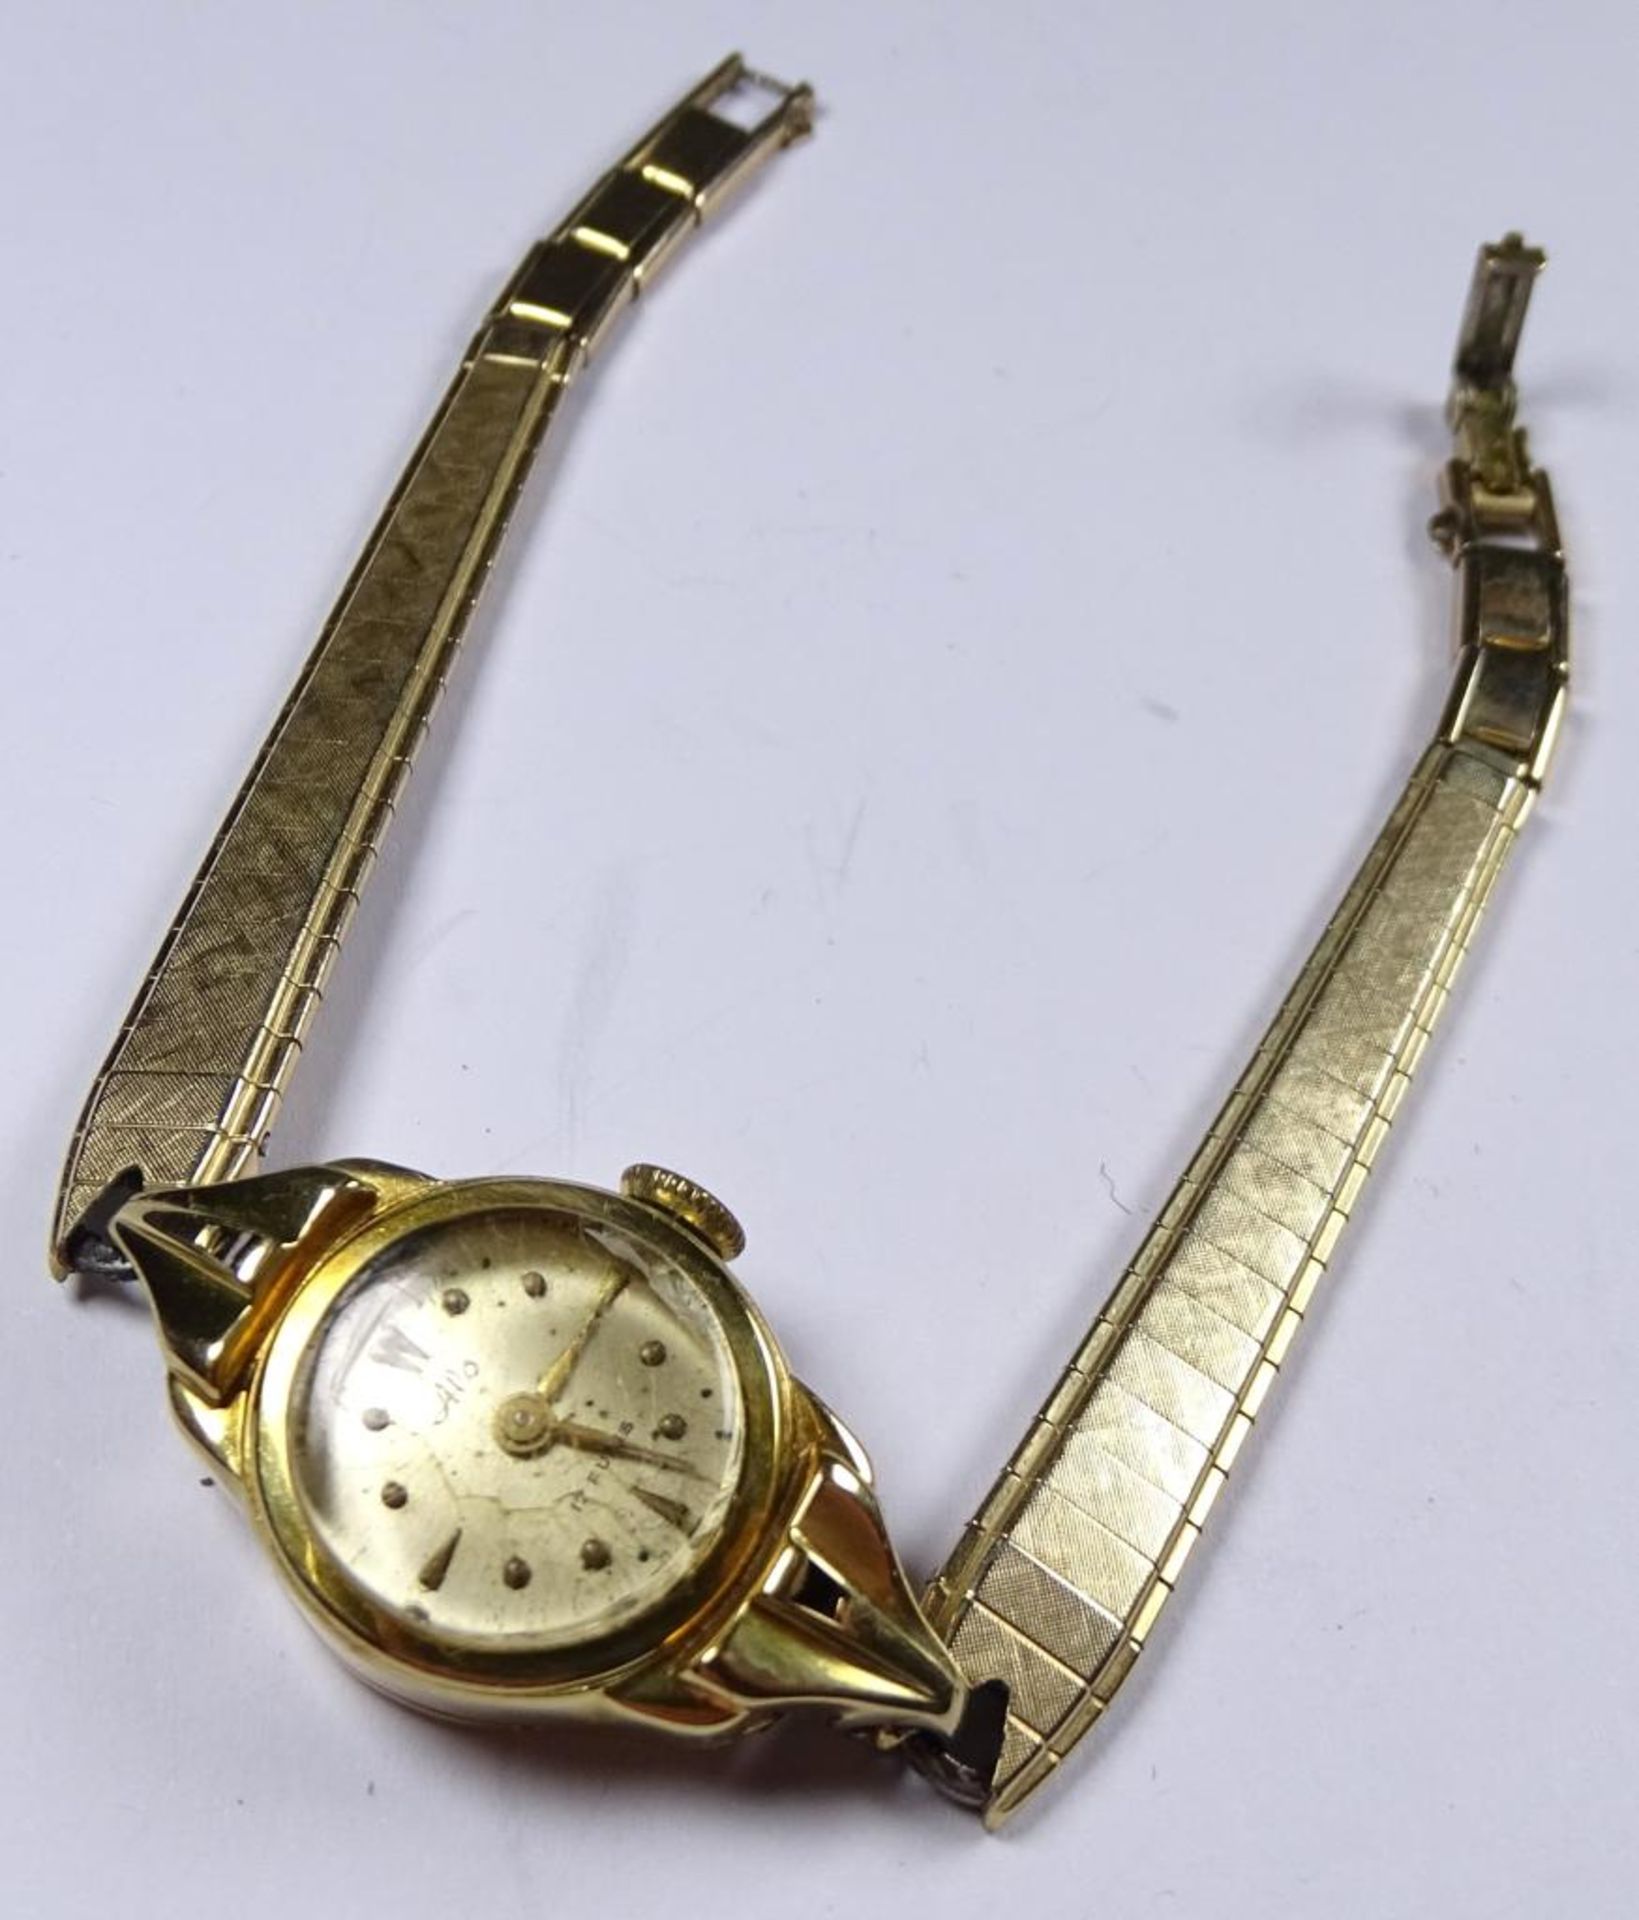 Damen Armbanduhr,Goldgehäuse -585-,Handaufzug,Werk läuf